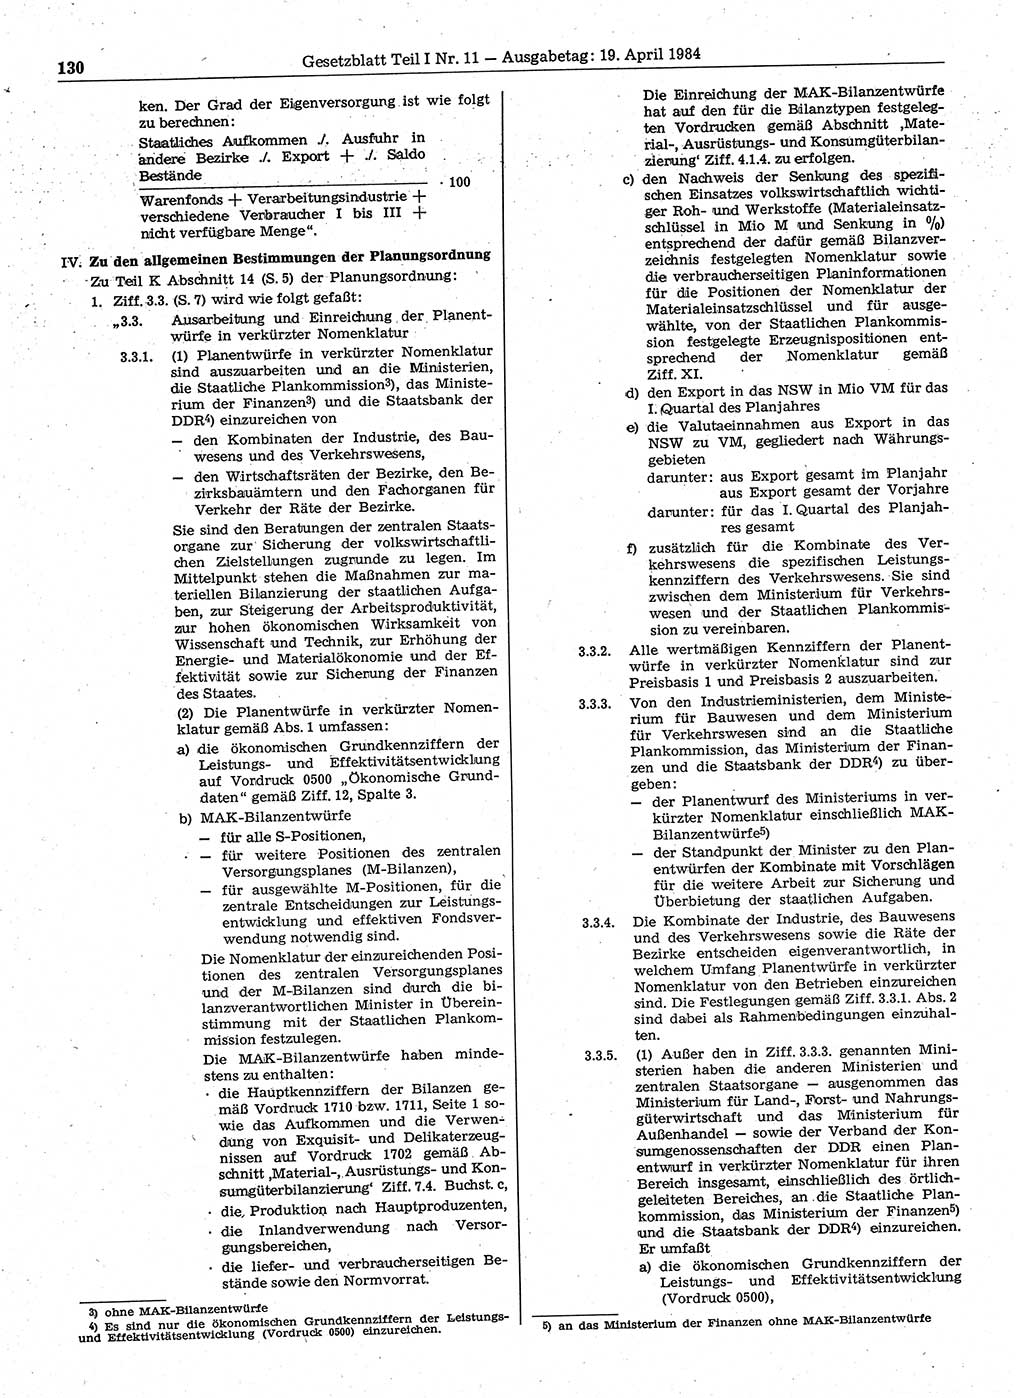 Gesetzblatt (GBl.) der Deutschen Demokratischen Republik (DDR) Teil Ⅰ 1984, Seite 130 (GBl. DDR Ⅰ 1984, S. 130)